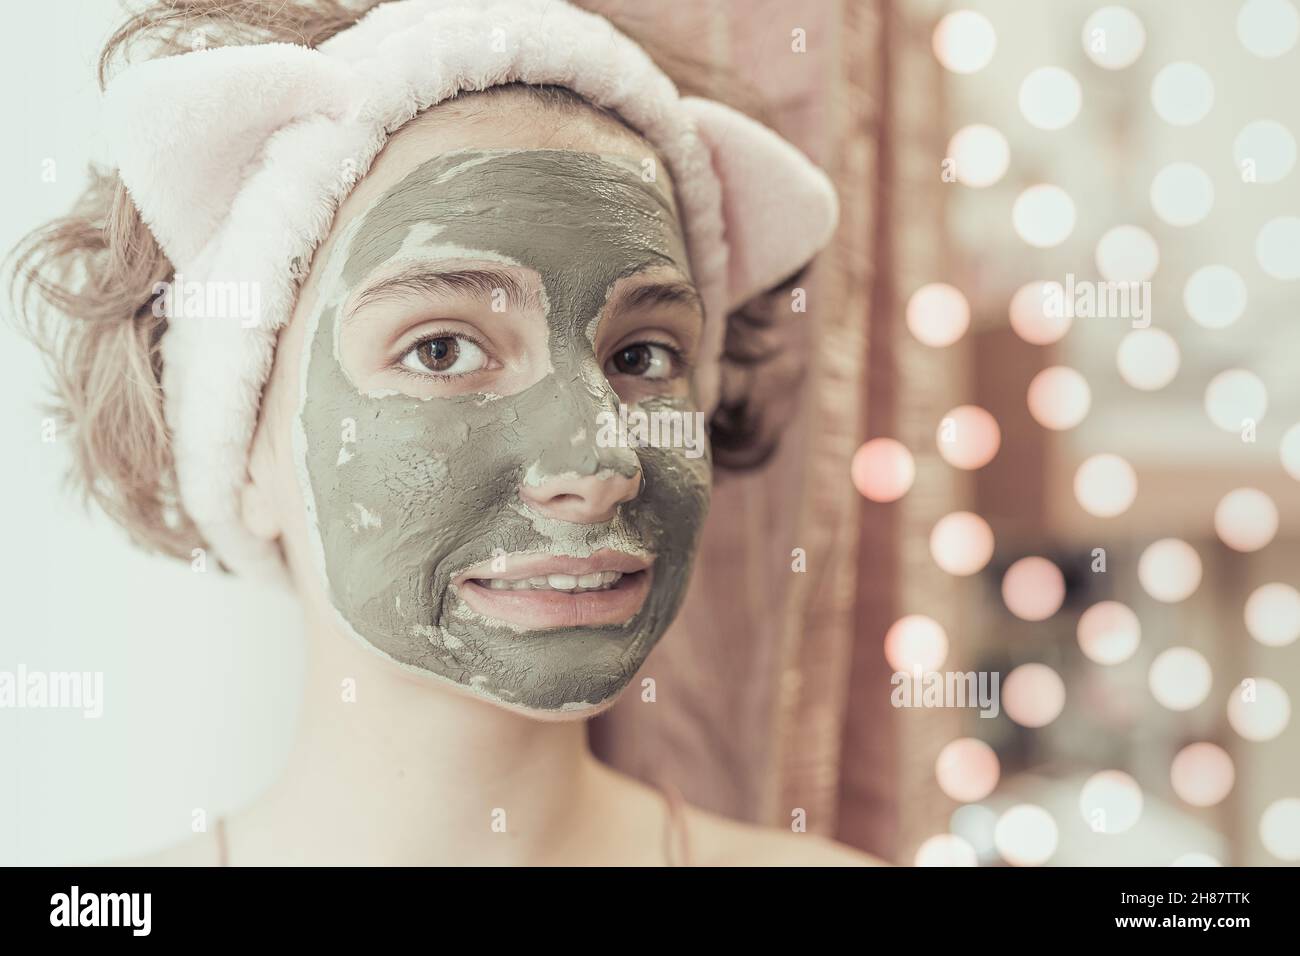 Modello caucasico ragazza adolescente in asciugamano sulla testa indossare maschera cosmetica fatto di verde guarigione argilla su sfondo sfocato di luci di ghirlanda festive Foto Stock